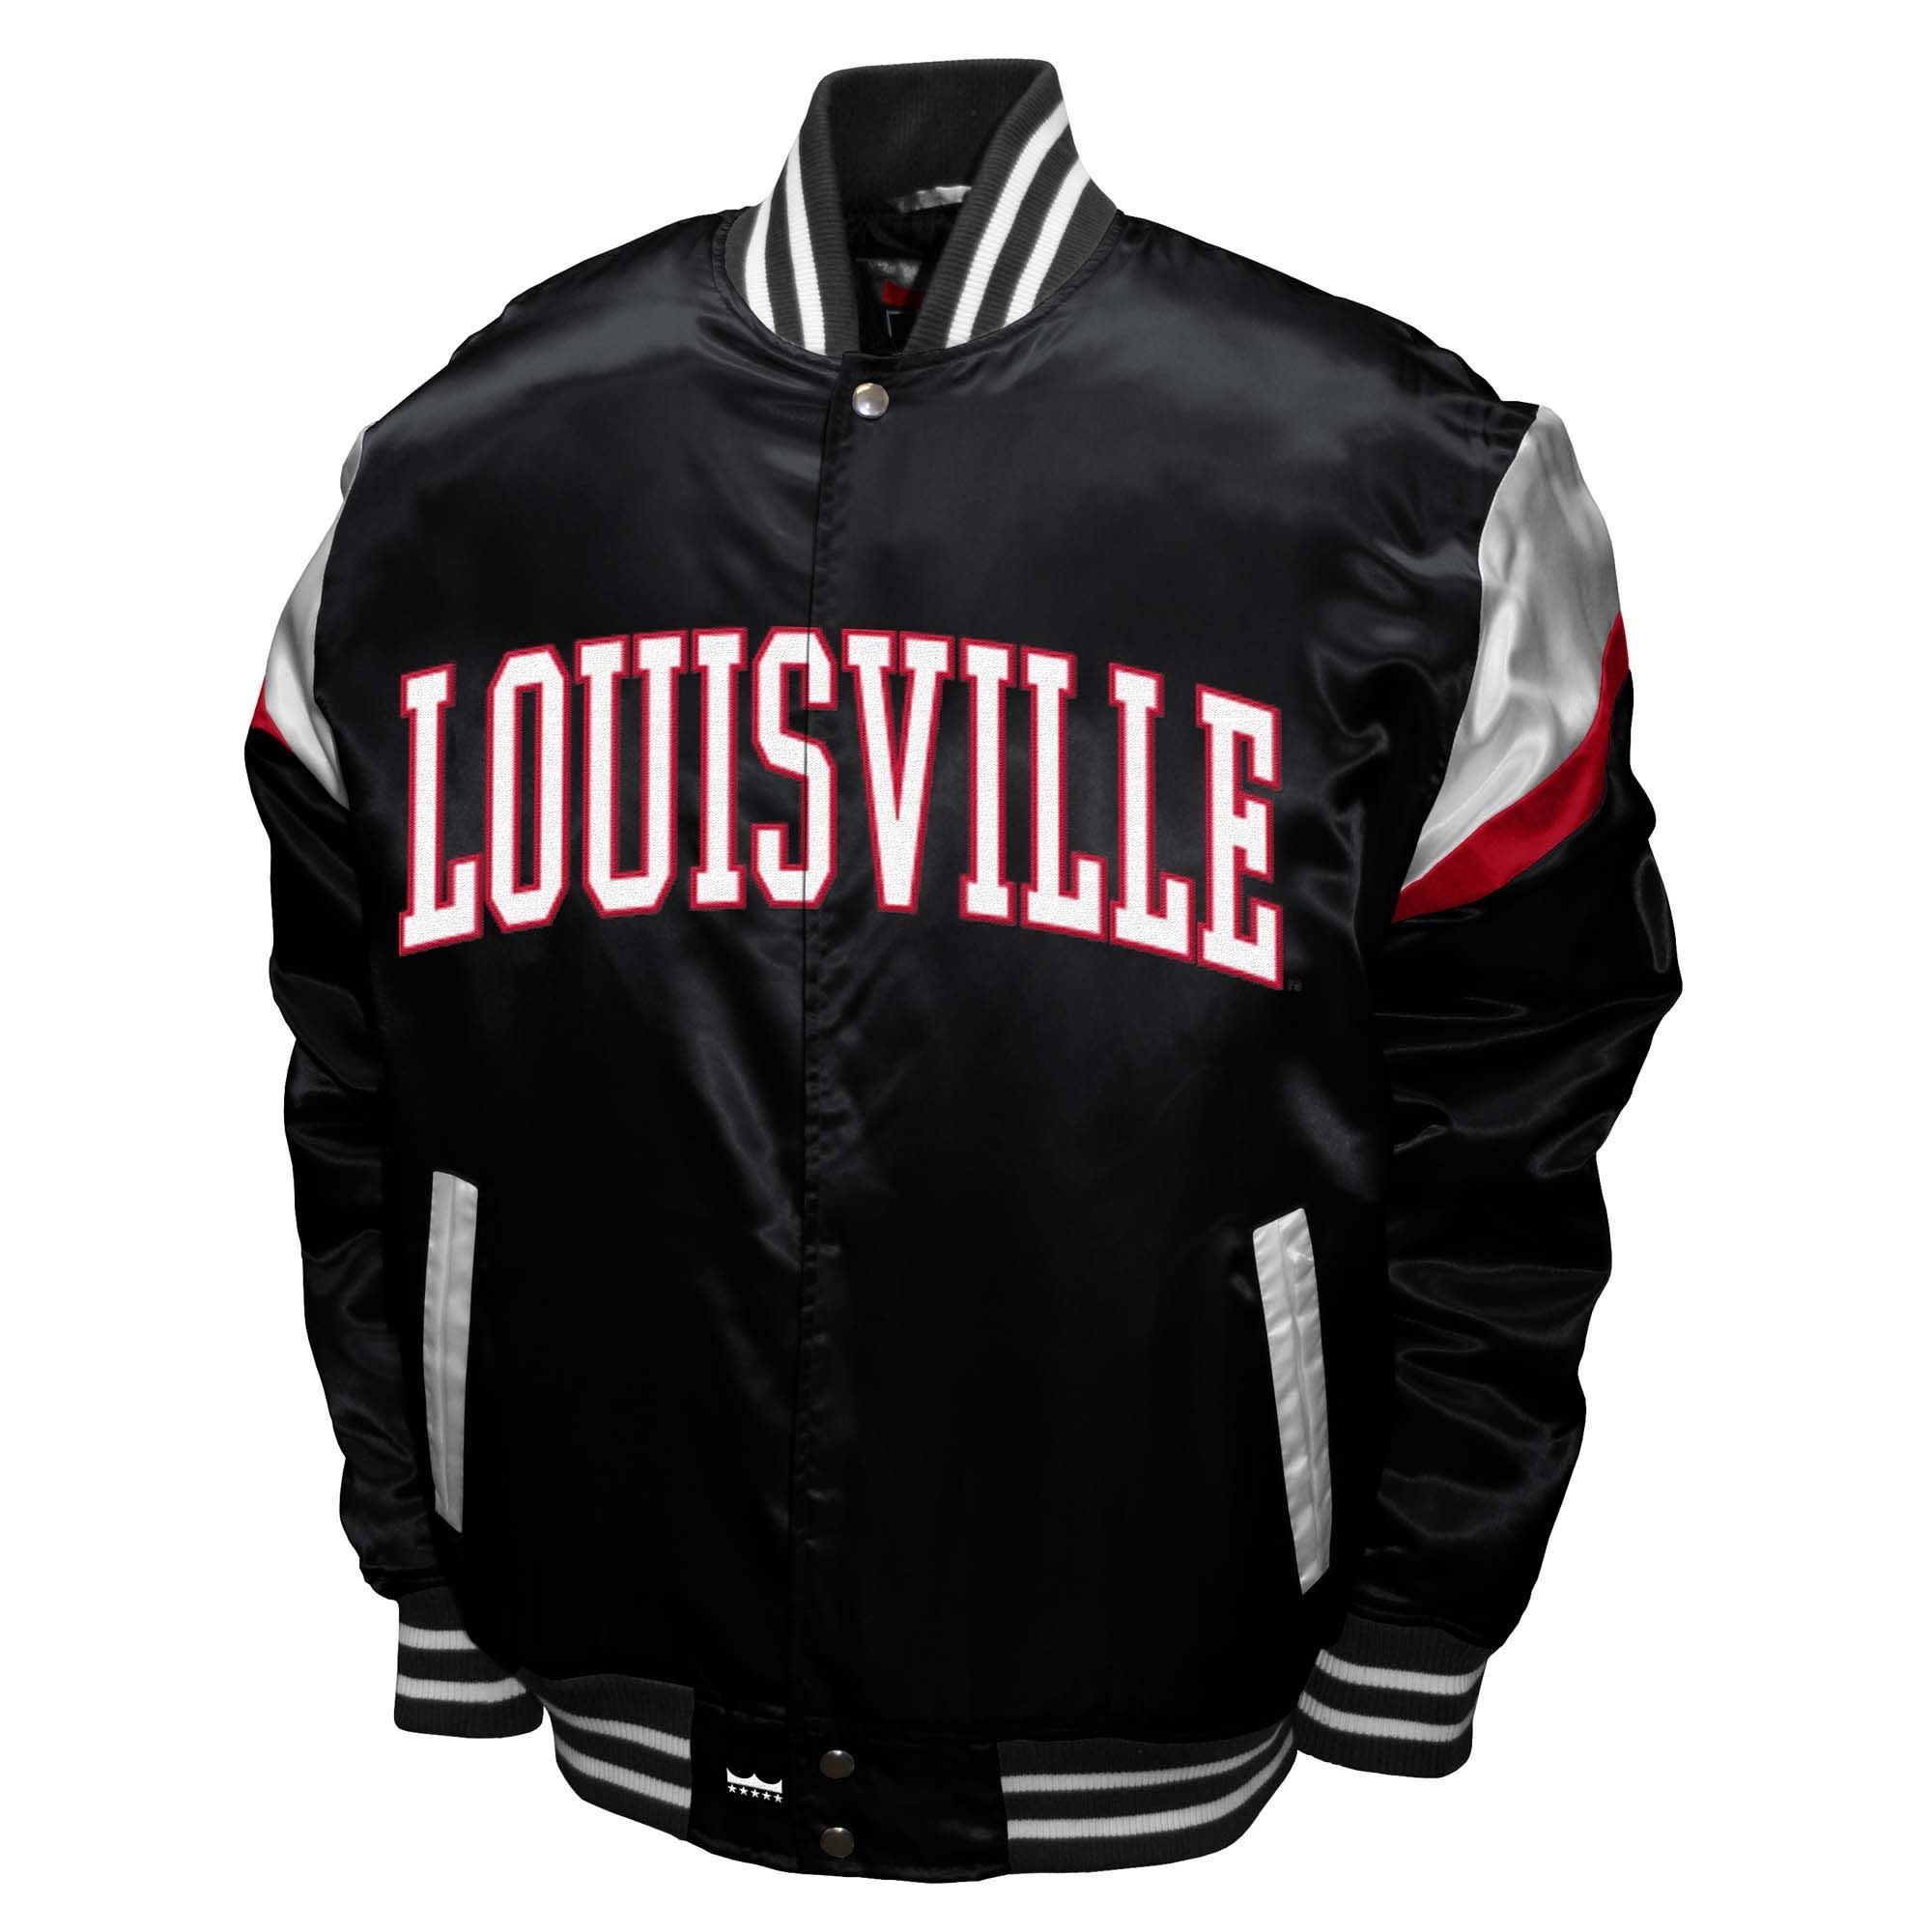 University of Louisville Jackets